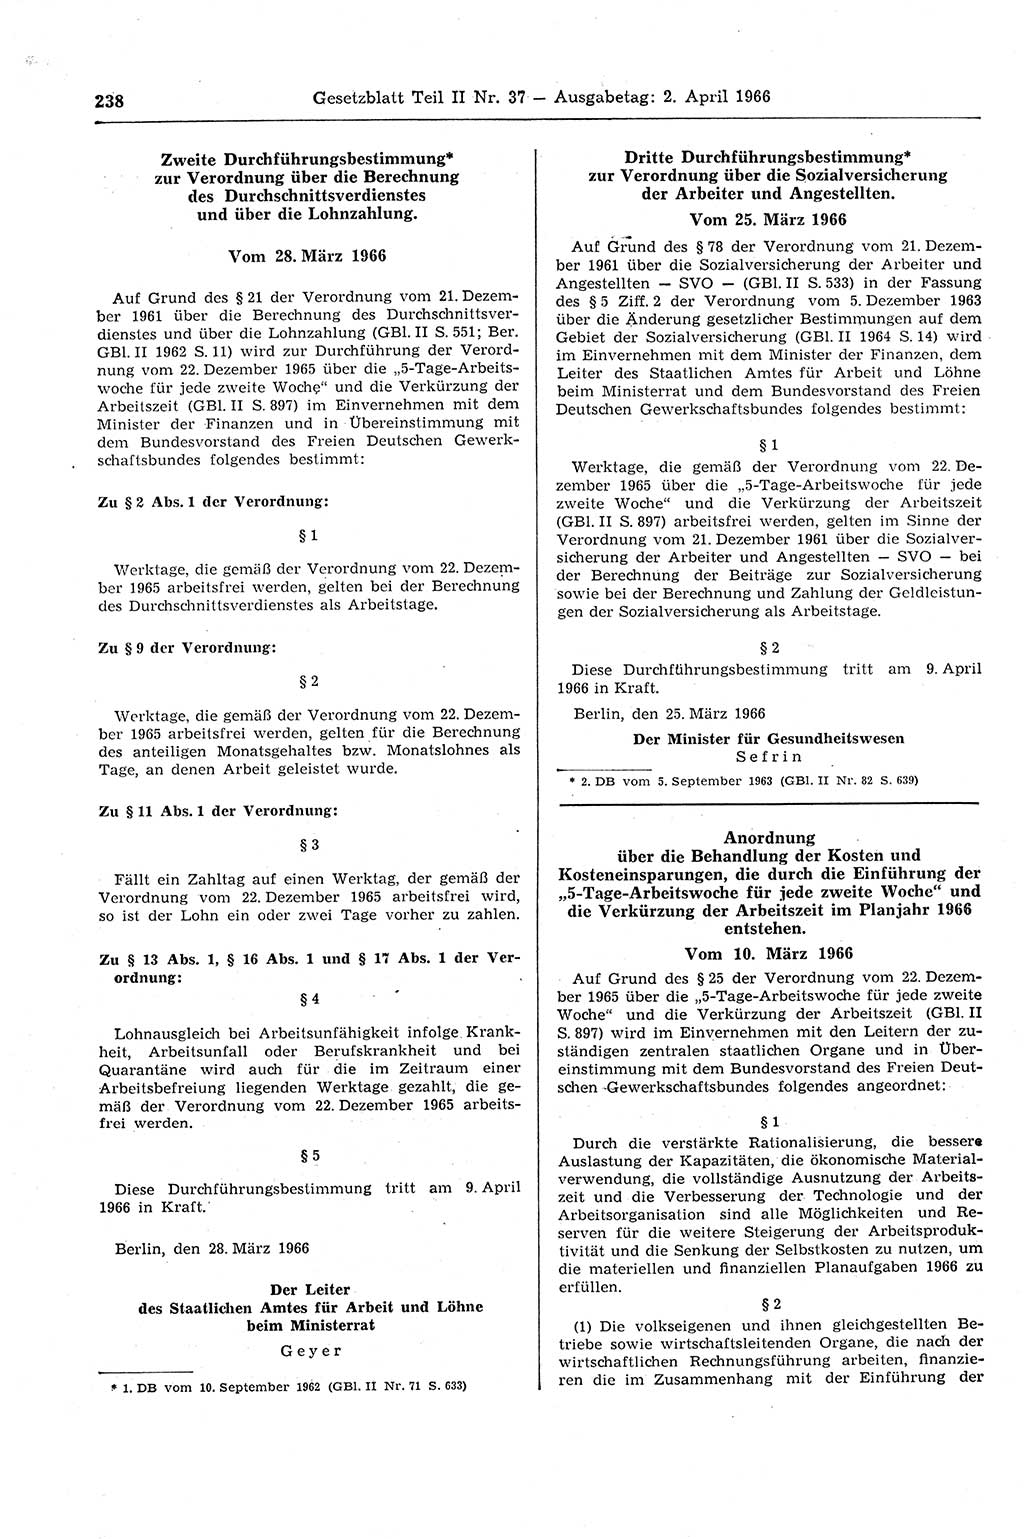 Gesetzblatt (GBl.) der Deutschen Demokratischen Republik (DDR) Teil ⅠⅠ 1966, Seite 238 (GBl. DDR ⅠⅠ 1966, S. 238)